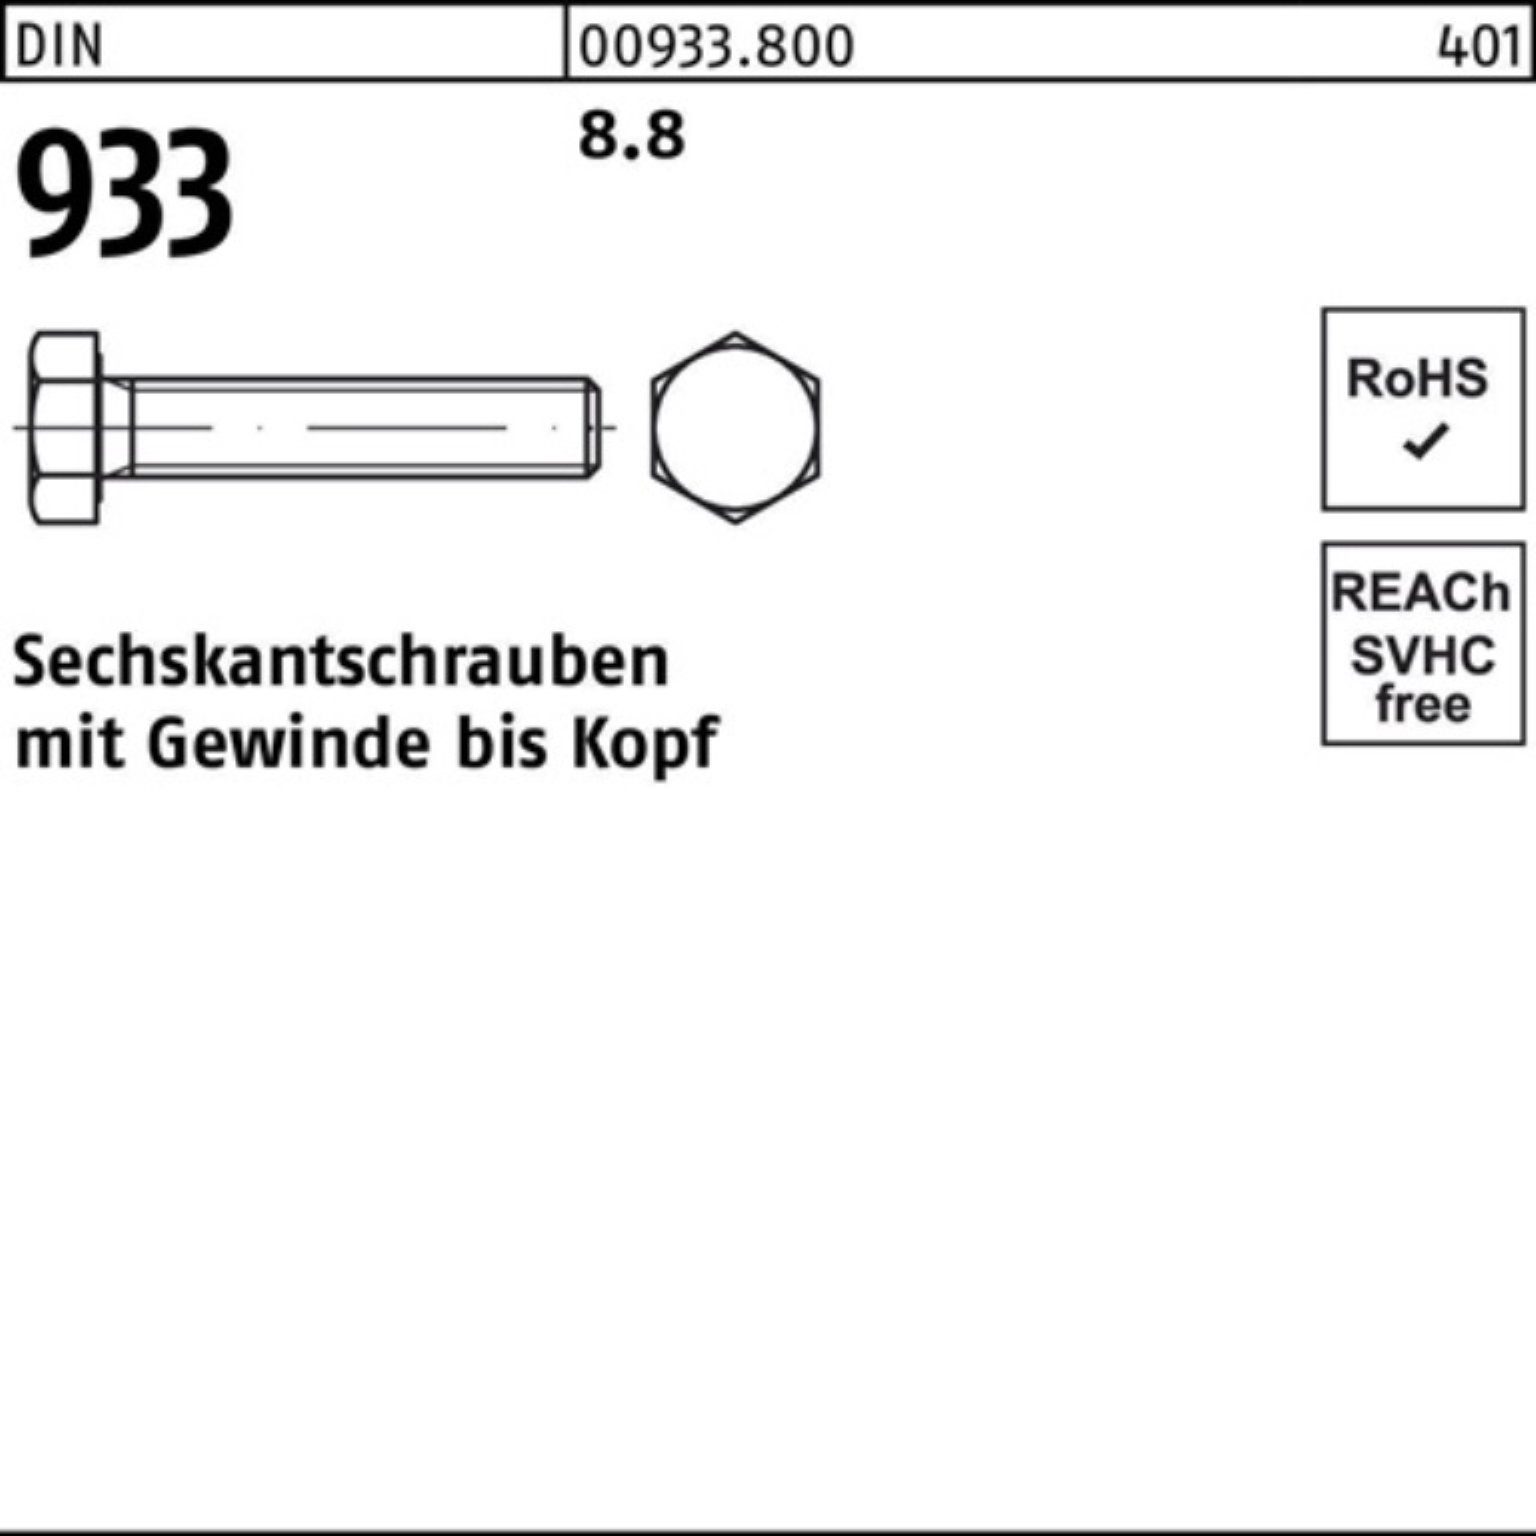 Reyher Sechskantschraube 100er Pack VG 933 DIN DIN 1 180 Stück M27x 933 8.8 Sechskantschraube